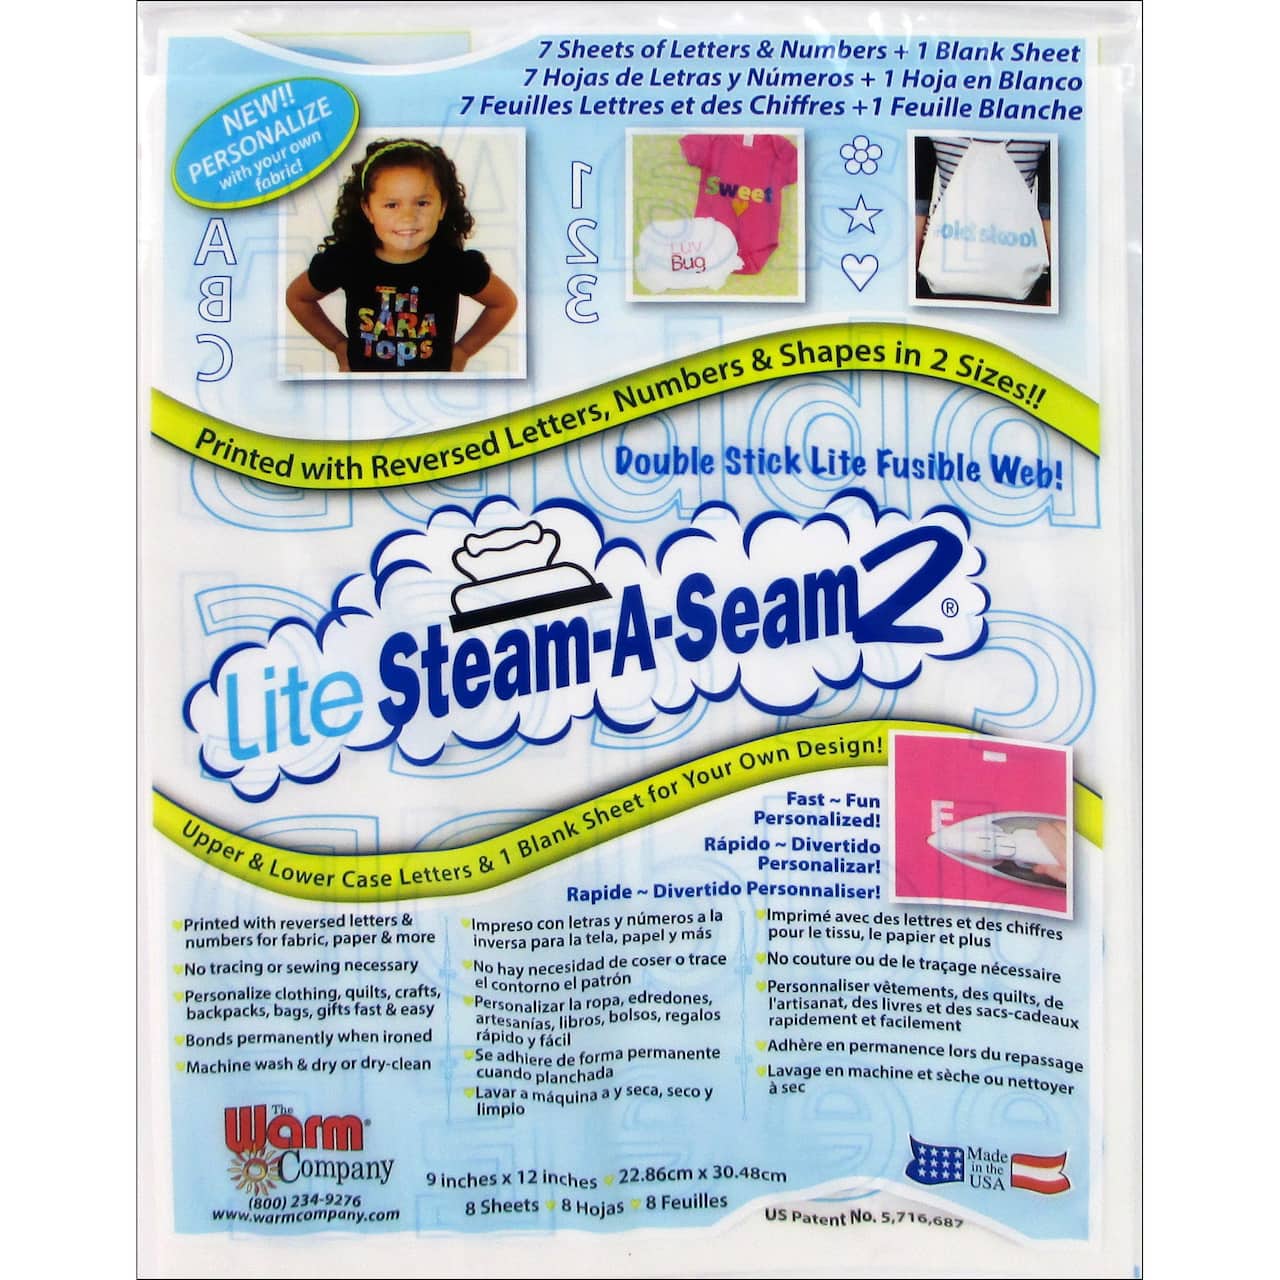 Lite Steam-A-Seam 2® Fusible Web